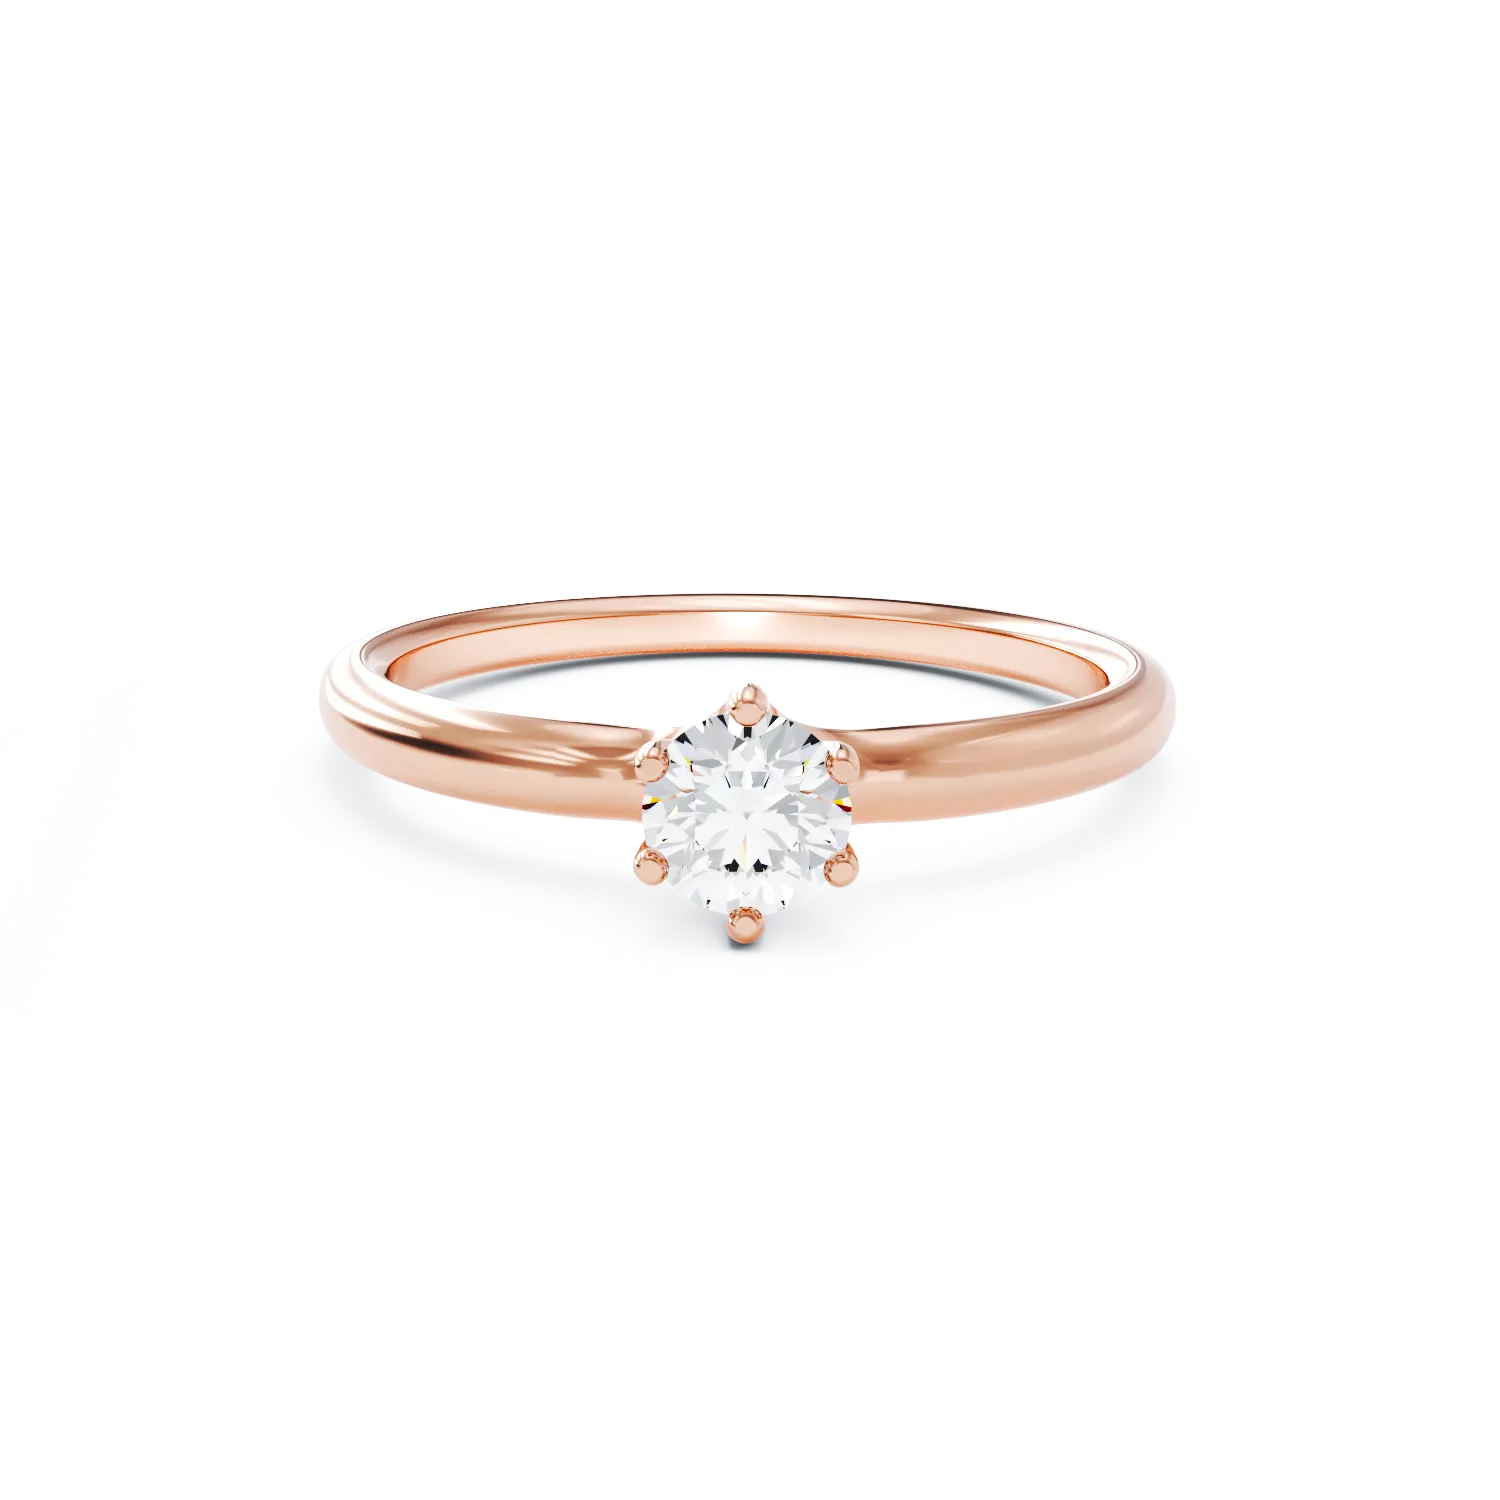 Eljegyzési gyűrű 18K-os rózsaszín aranyból 0,31ct gyémánttal. Gramm: 2,25